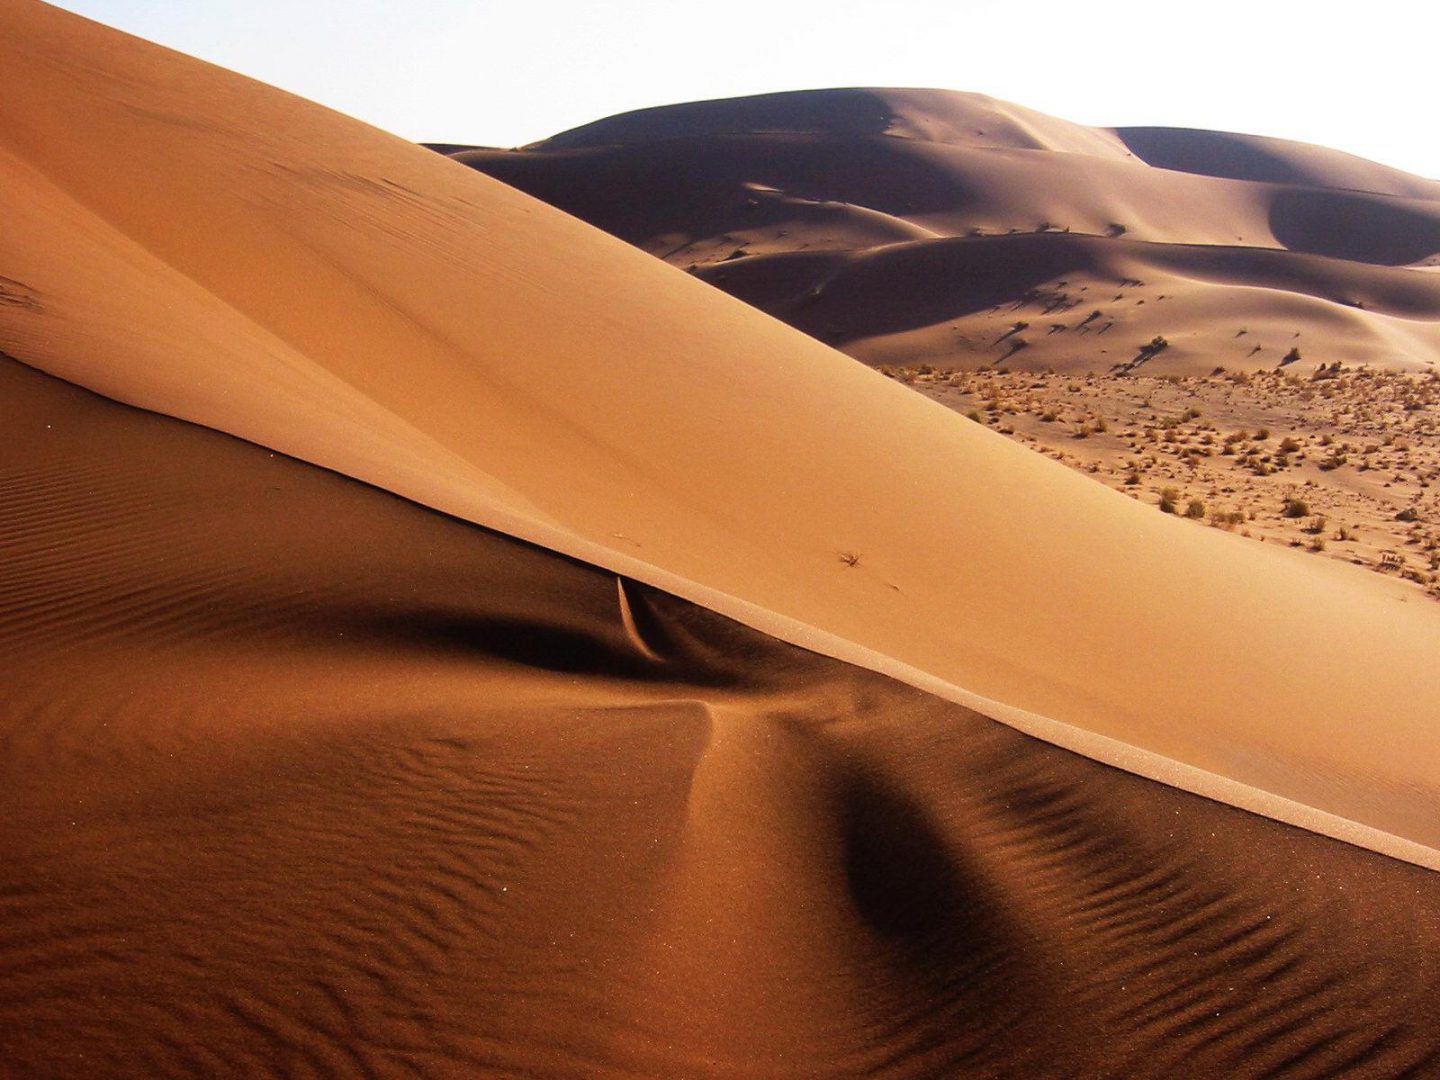 Namib_Desert_Namibia(2)